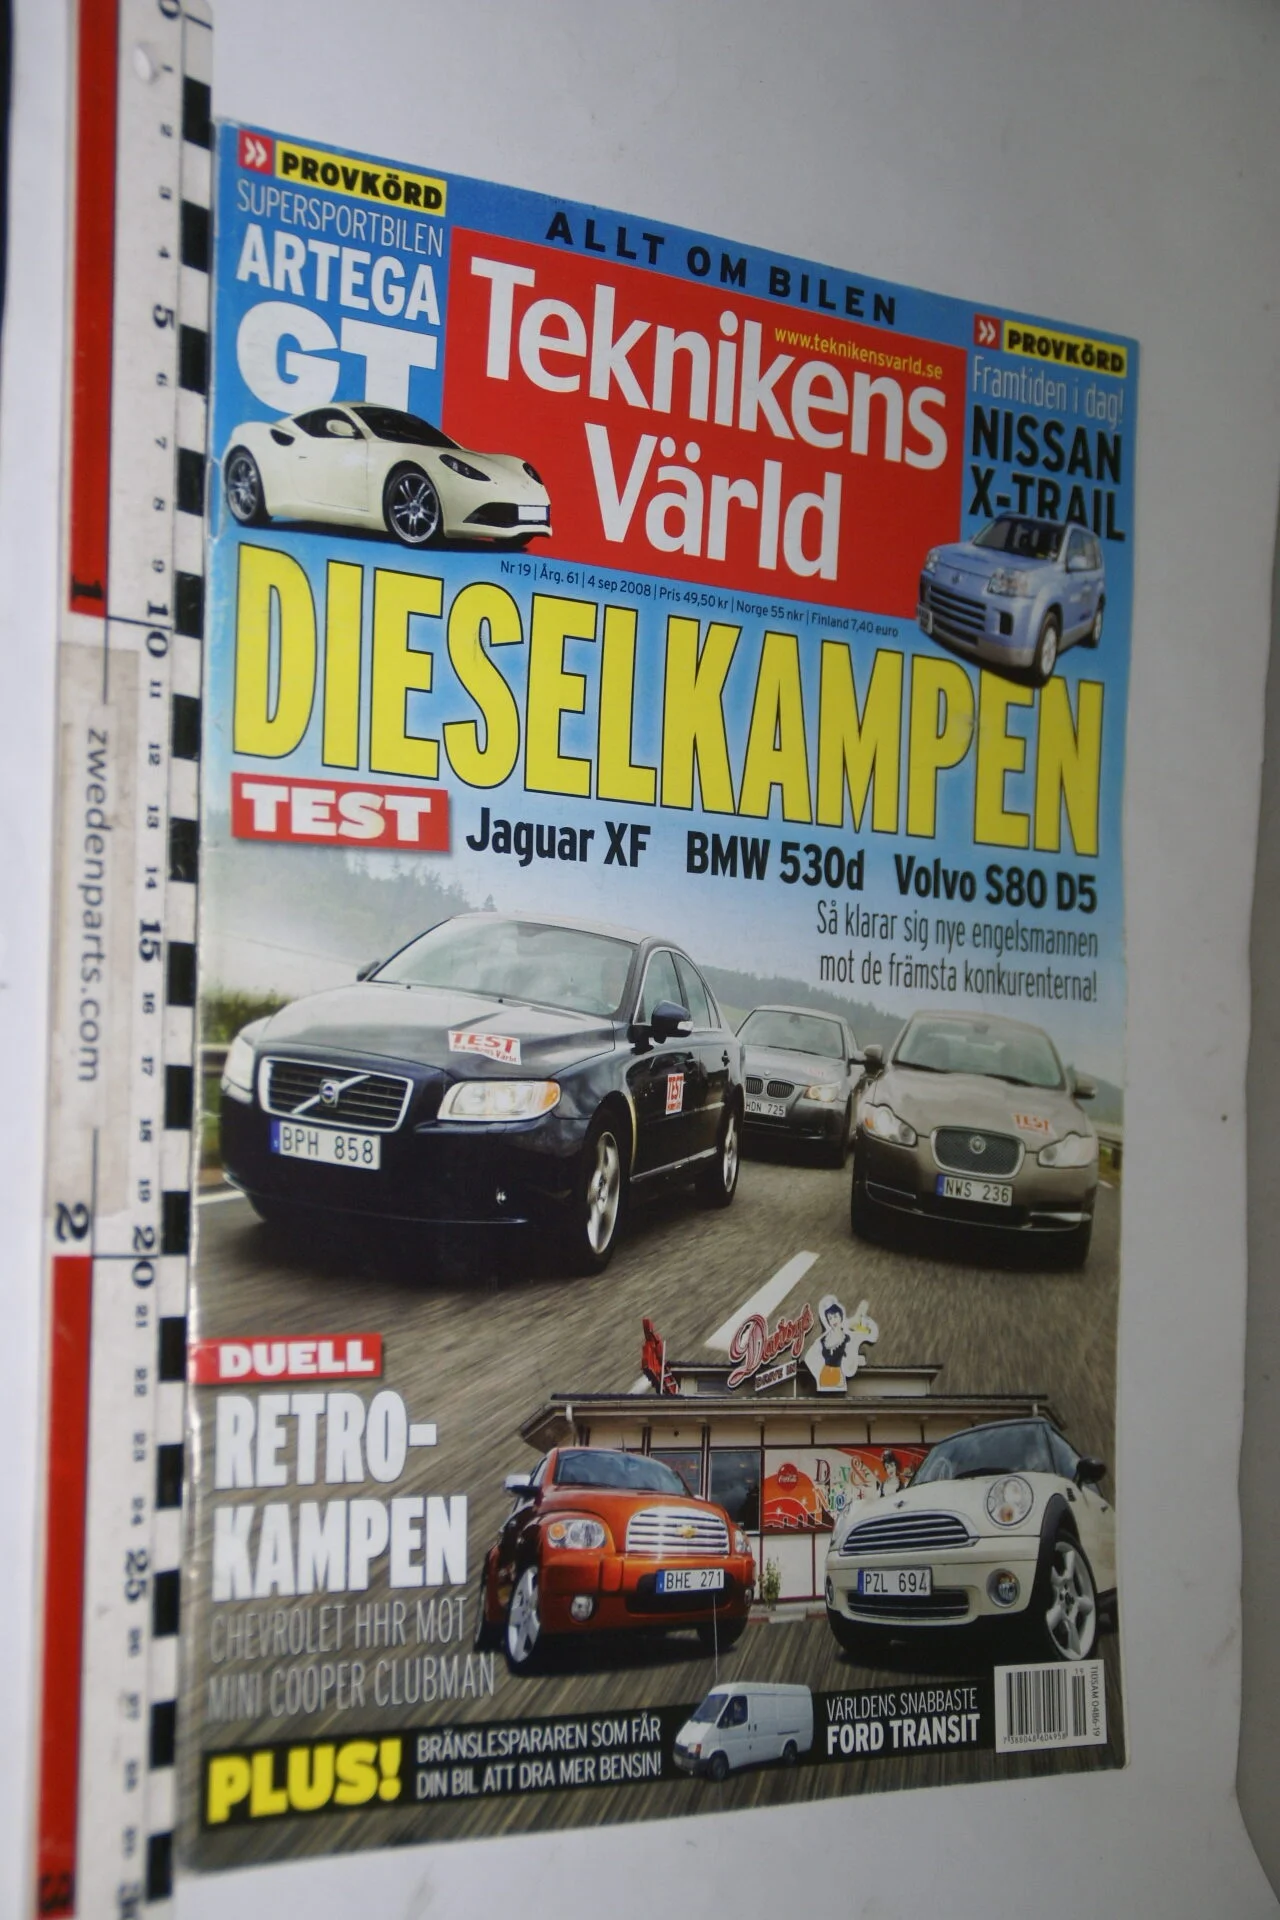 DSC08081 tijdschrift Teknikens Värld 4 september 2008 met Volvo S80, Svenska-fbd2745f